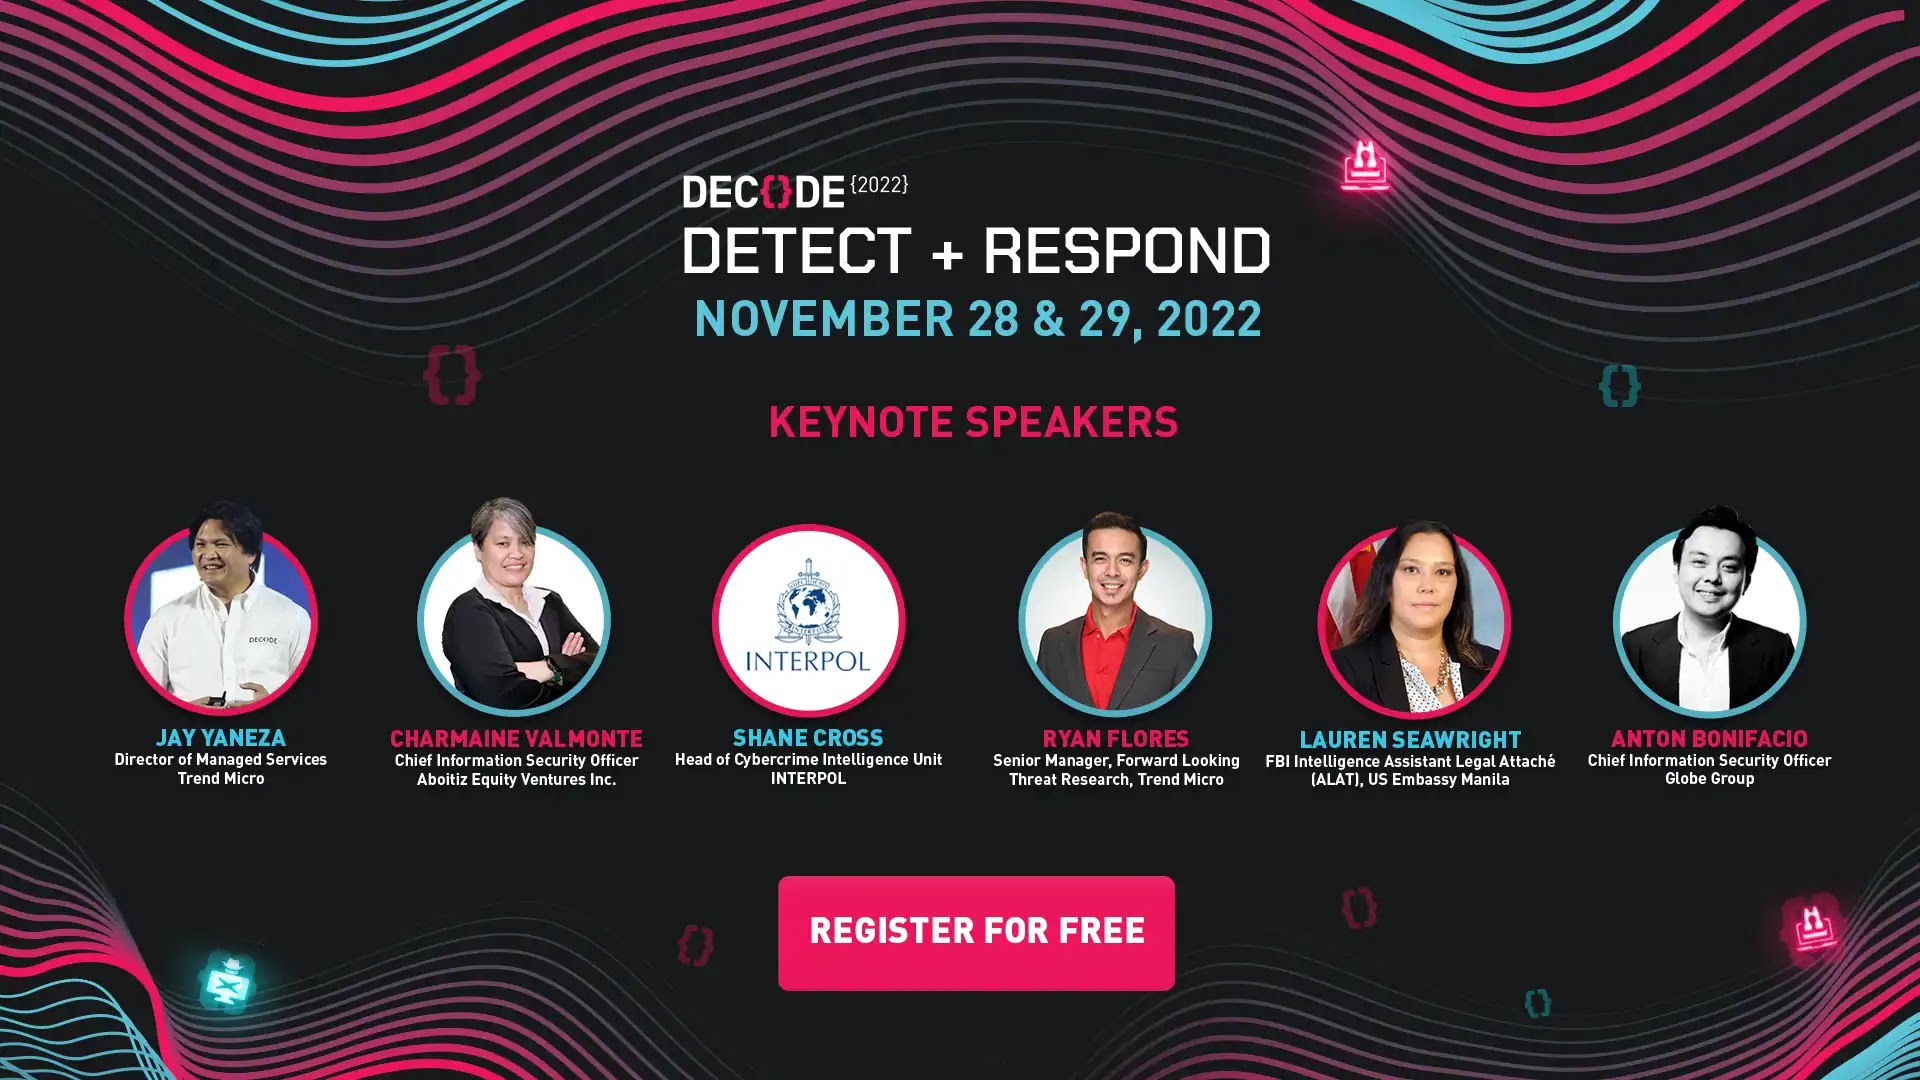 DECODE 2022 Keynote Speakers